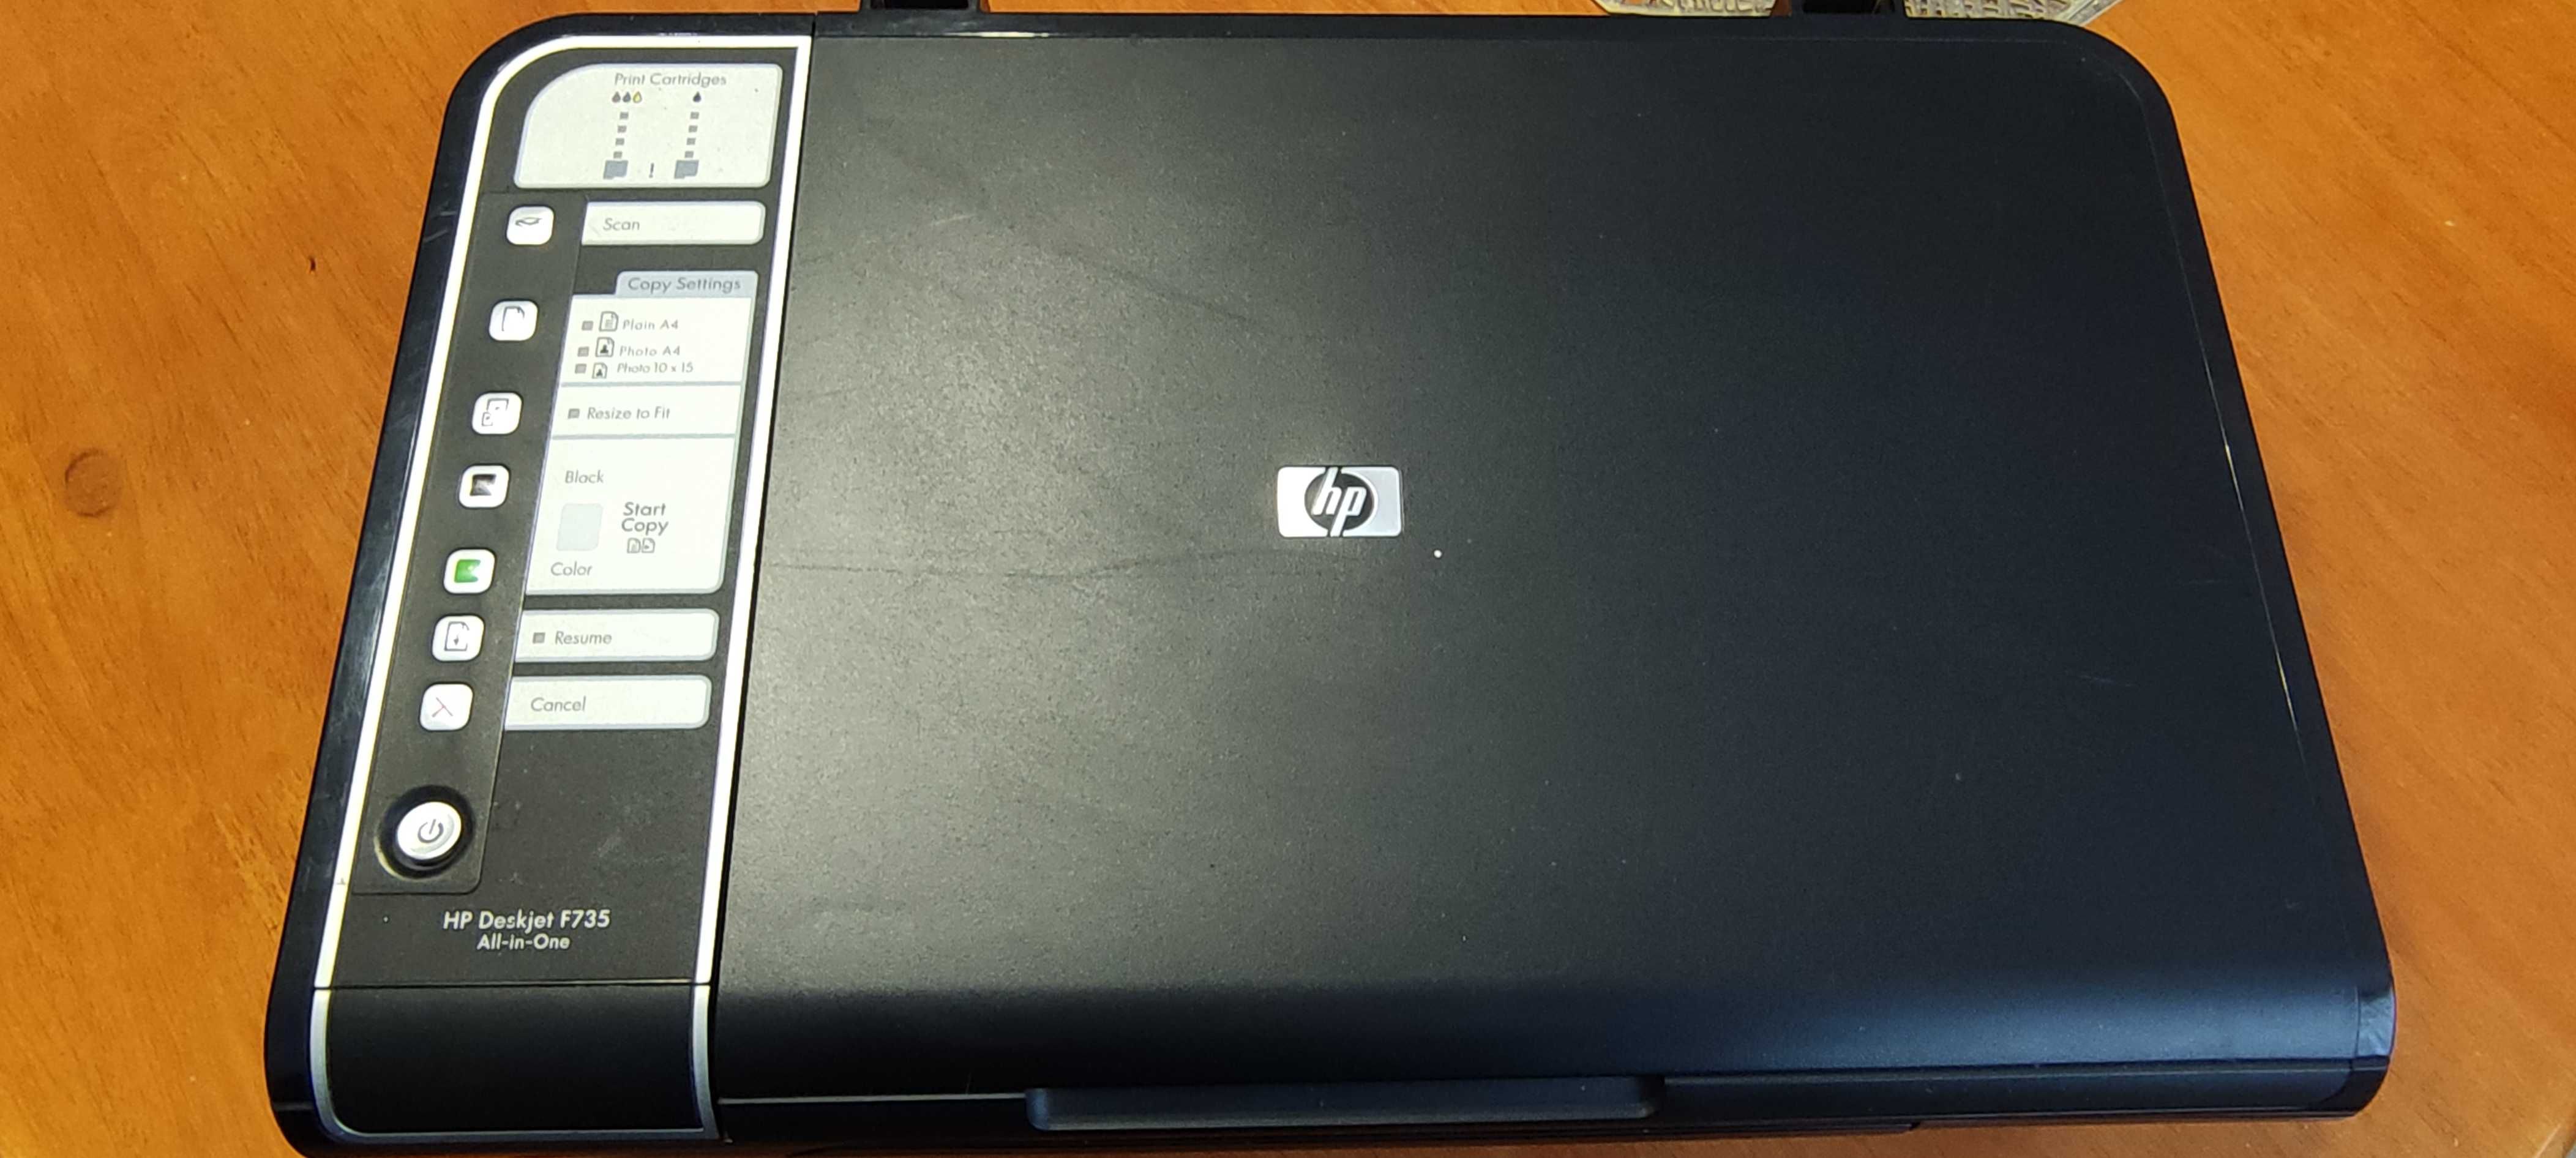 Sprzedam używaną DRUKARKĘ HP Deskjet F735